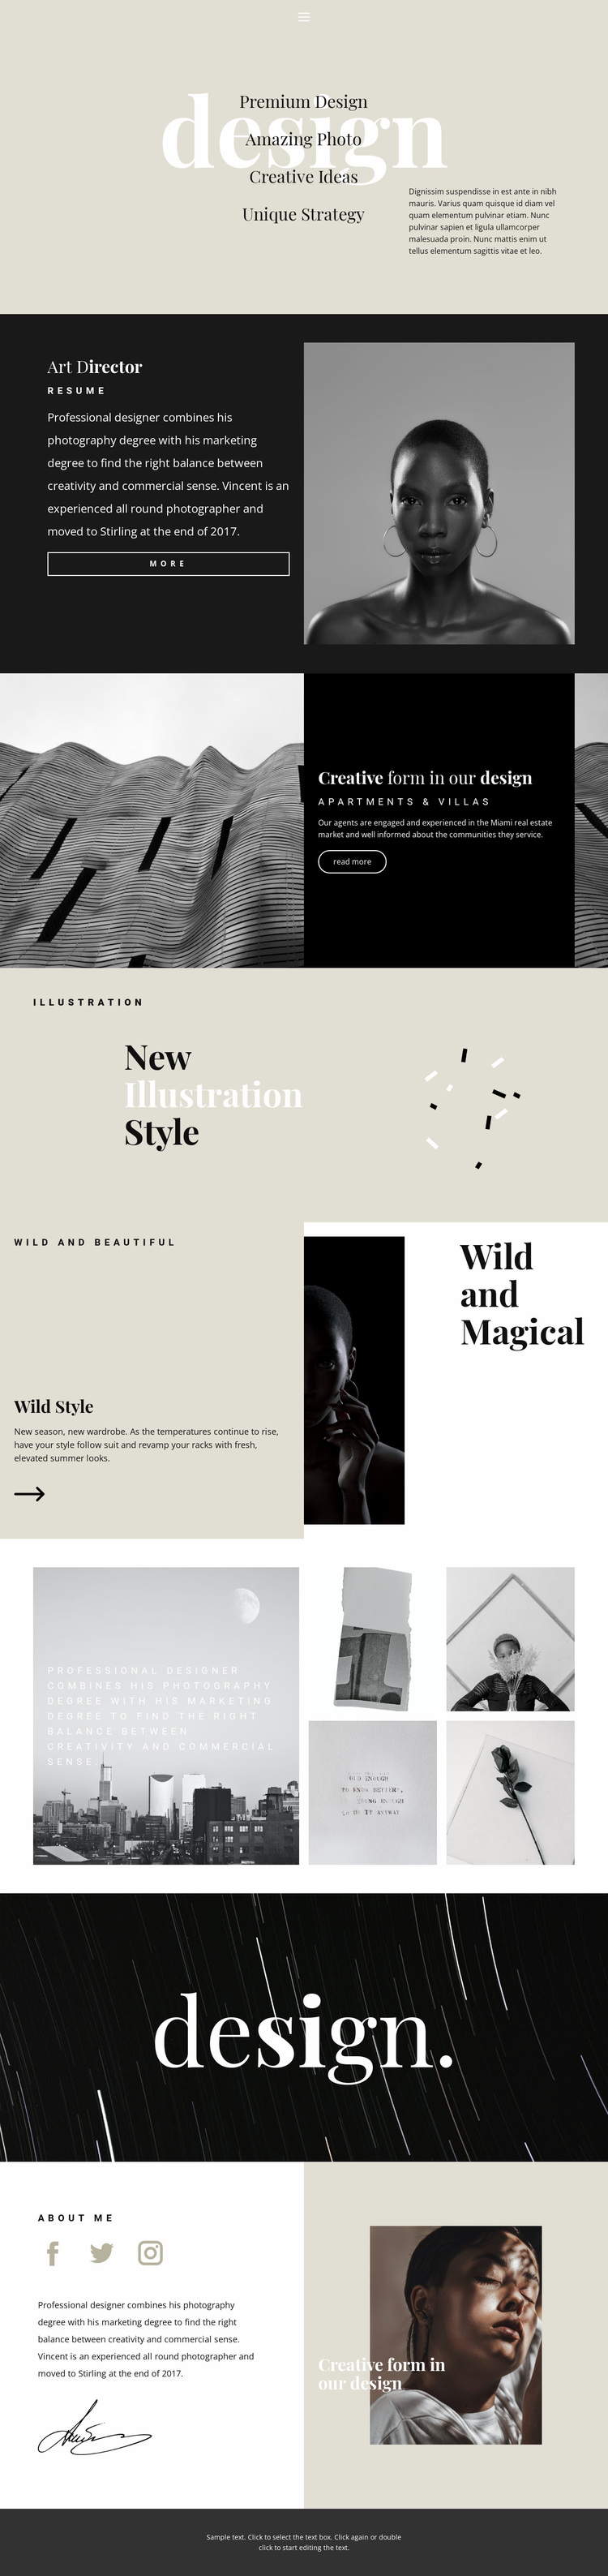 Directions of design studio Website Design